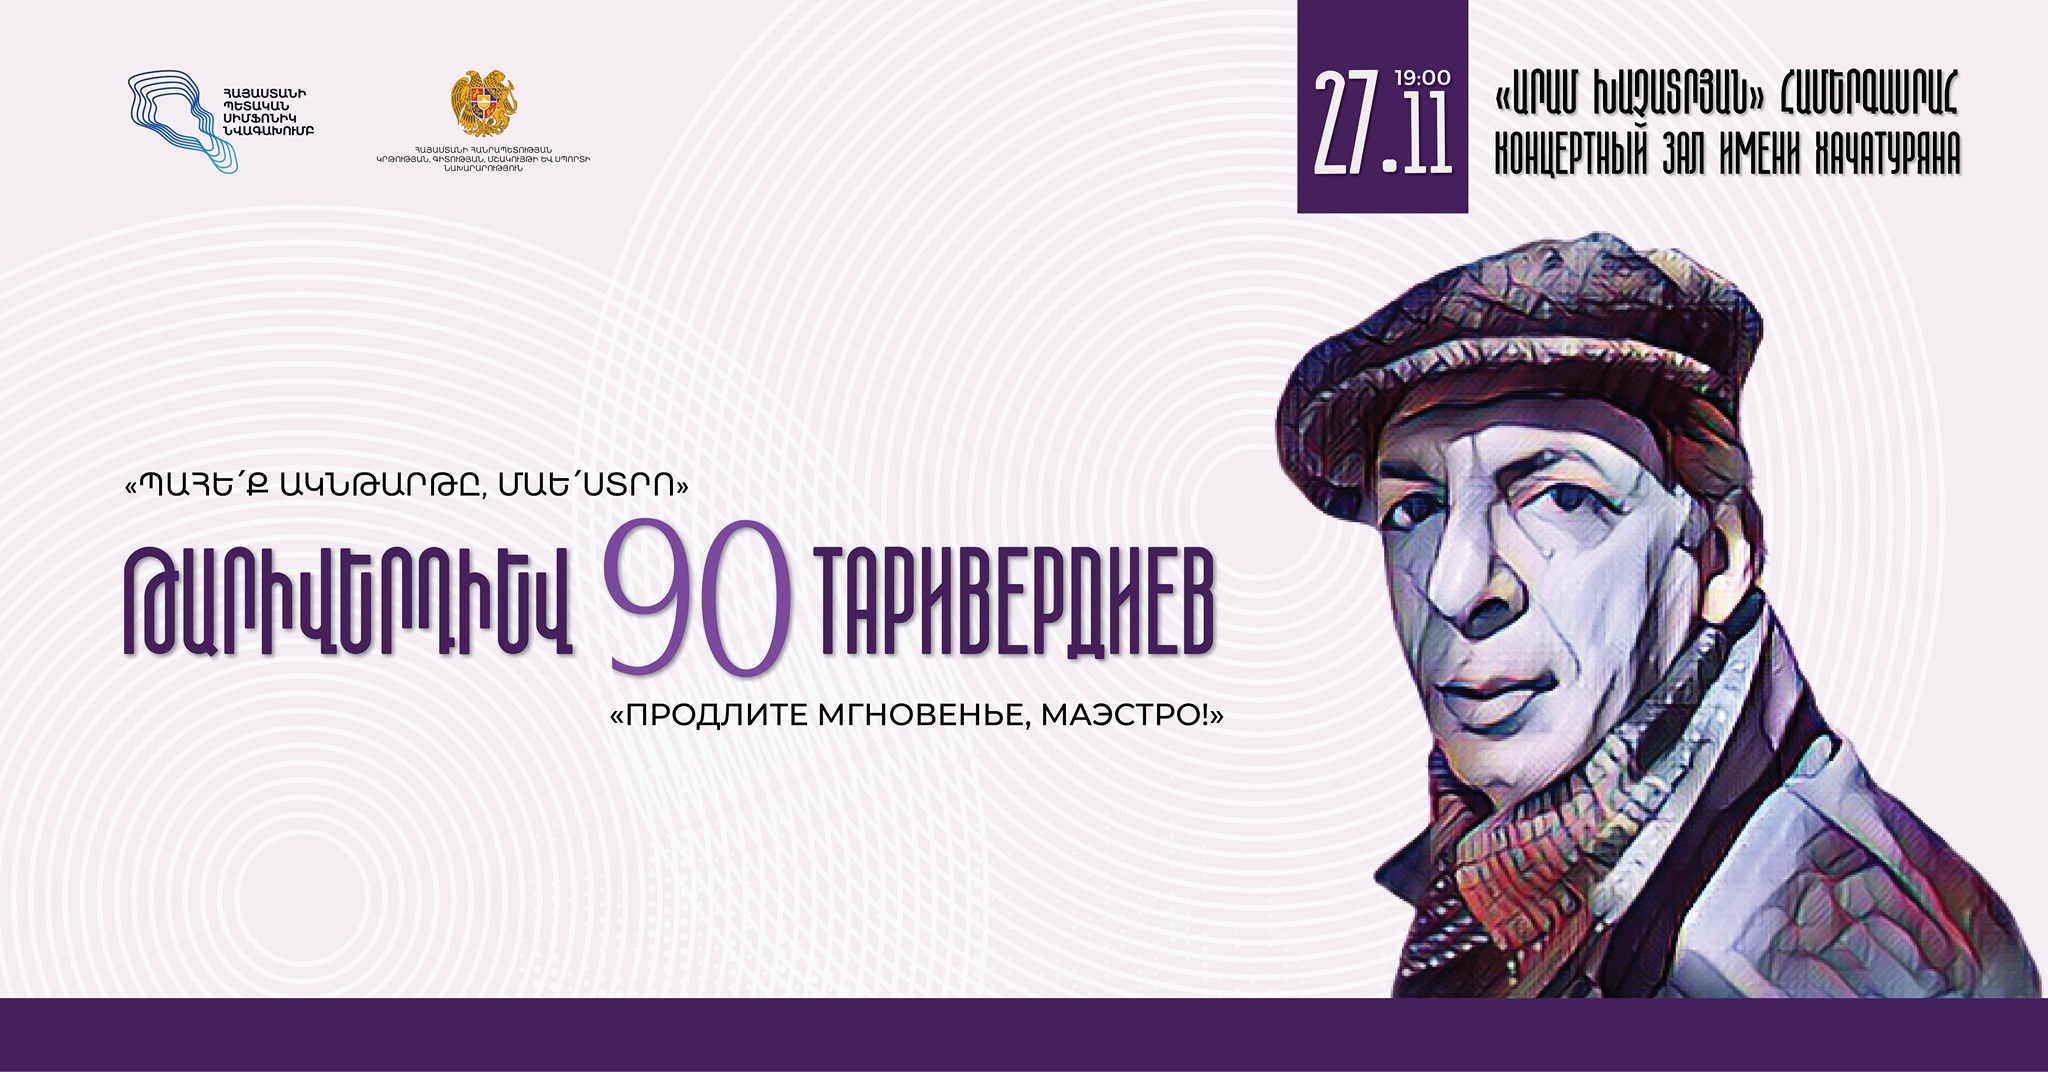 В Ереване состоится вечер, посвященный 90-летию Микаэла Таривердиева